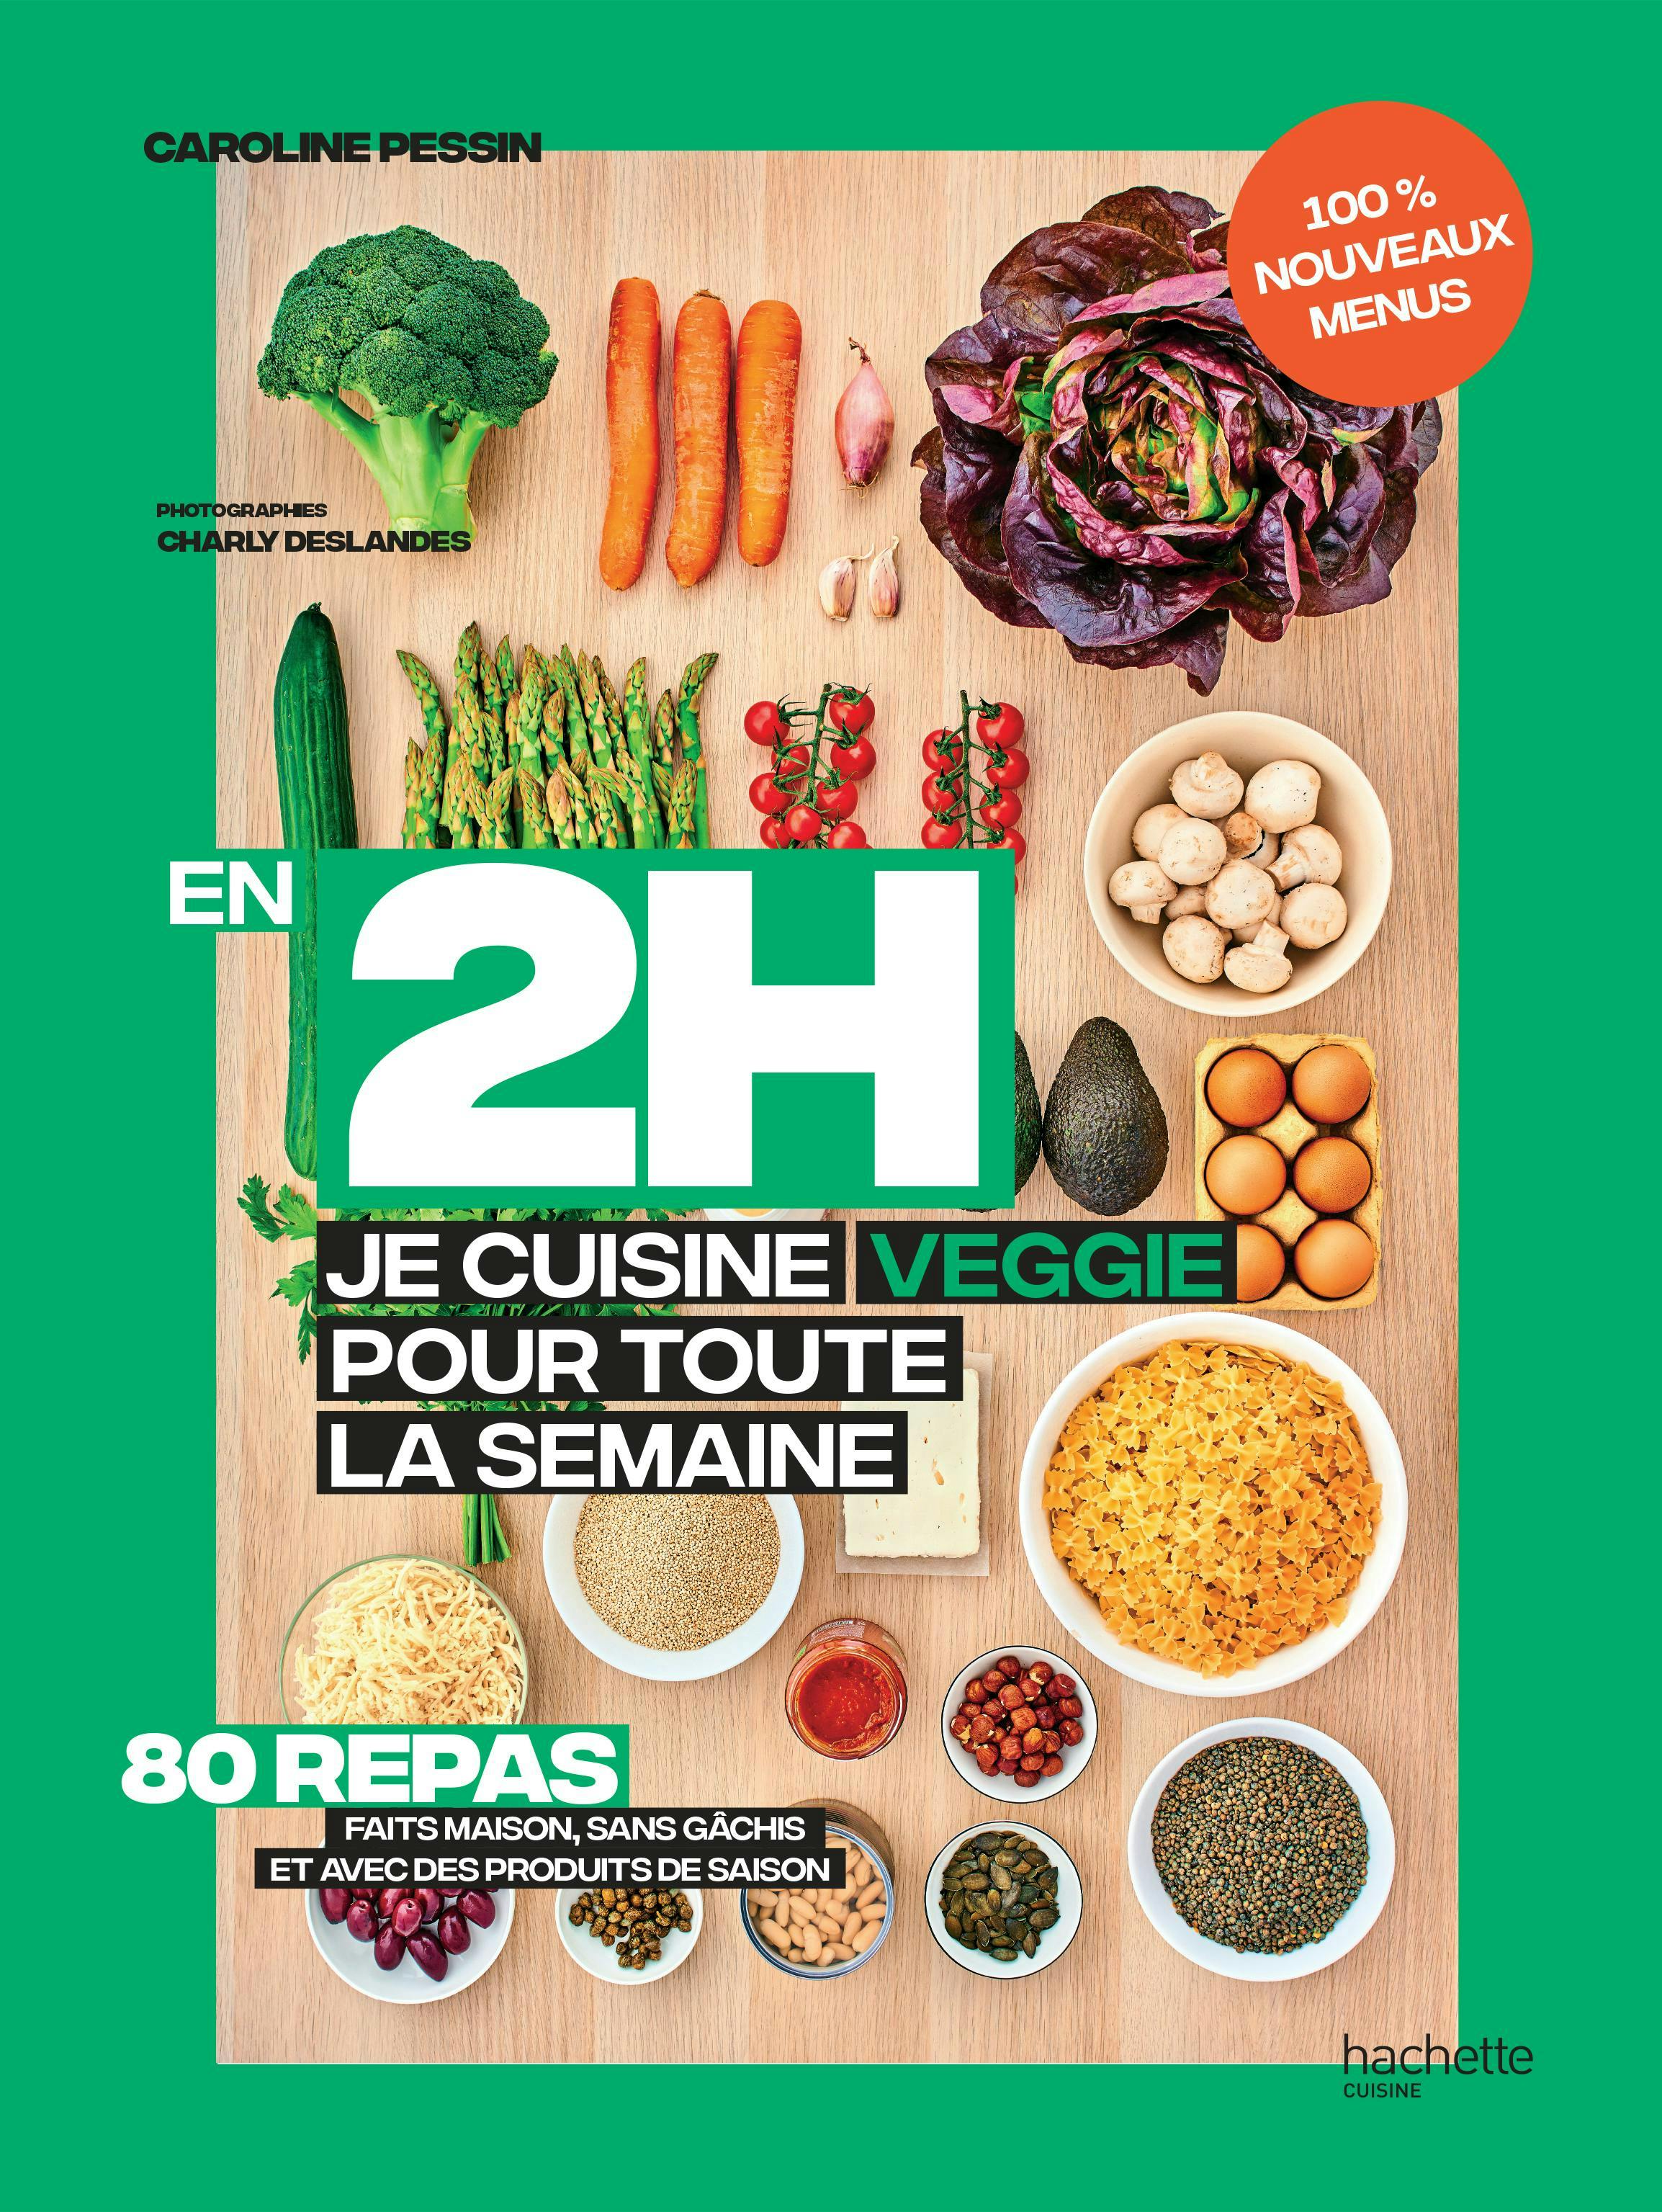 En 2 h je cuisine veggie pour toute la semaine tome 2 de Caroline Pessin, photographies de Charly Deslandes, stylisme de Caroline Pessin. Hachette Cuisine